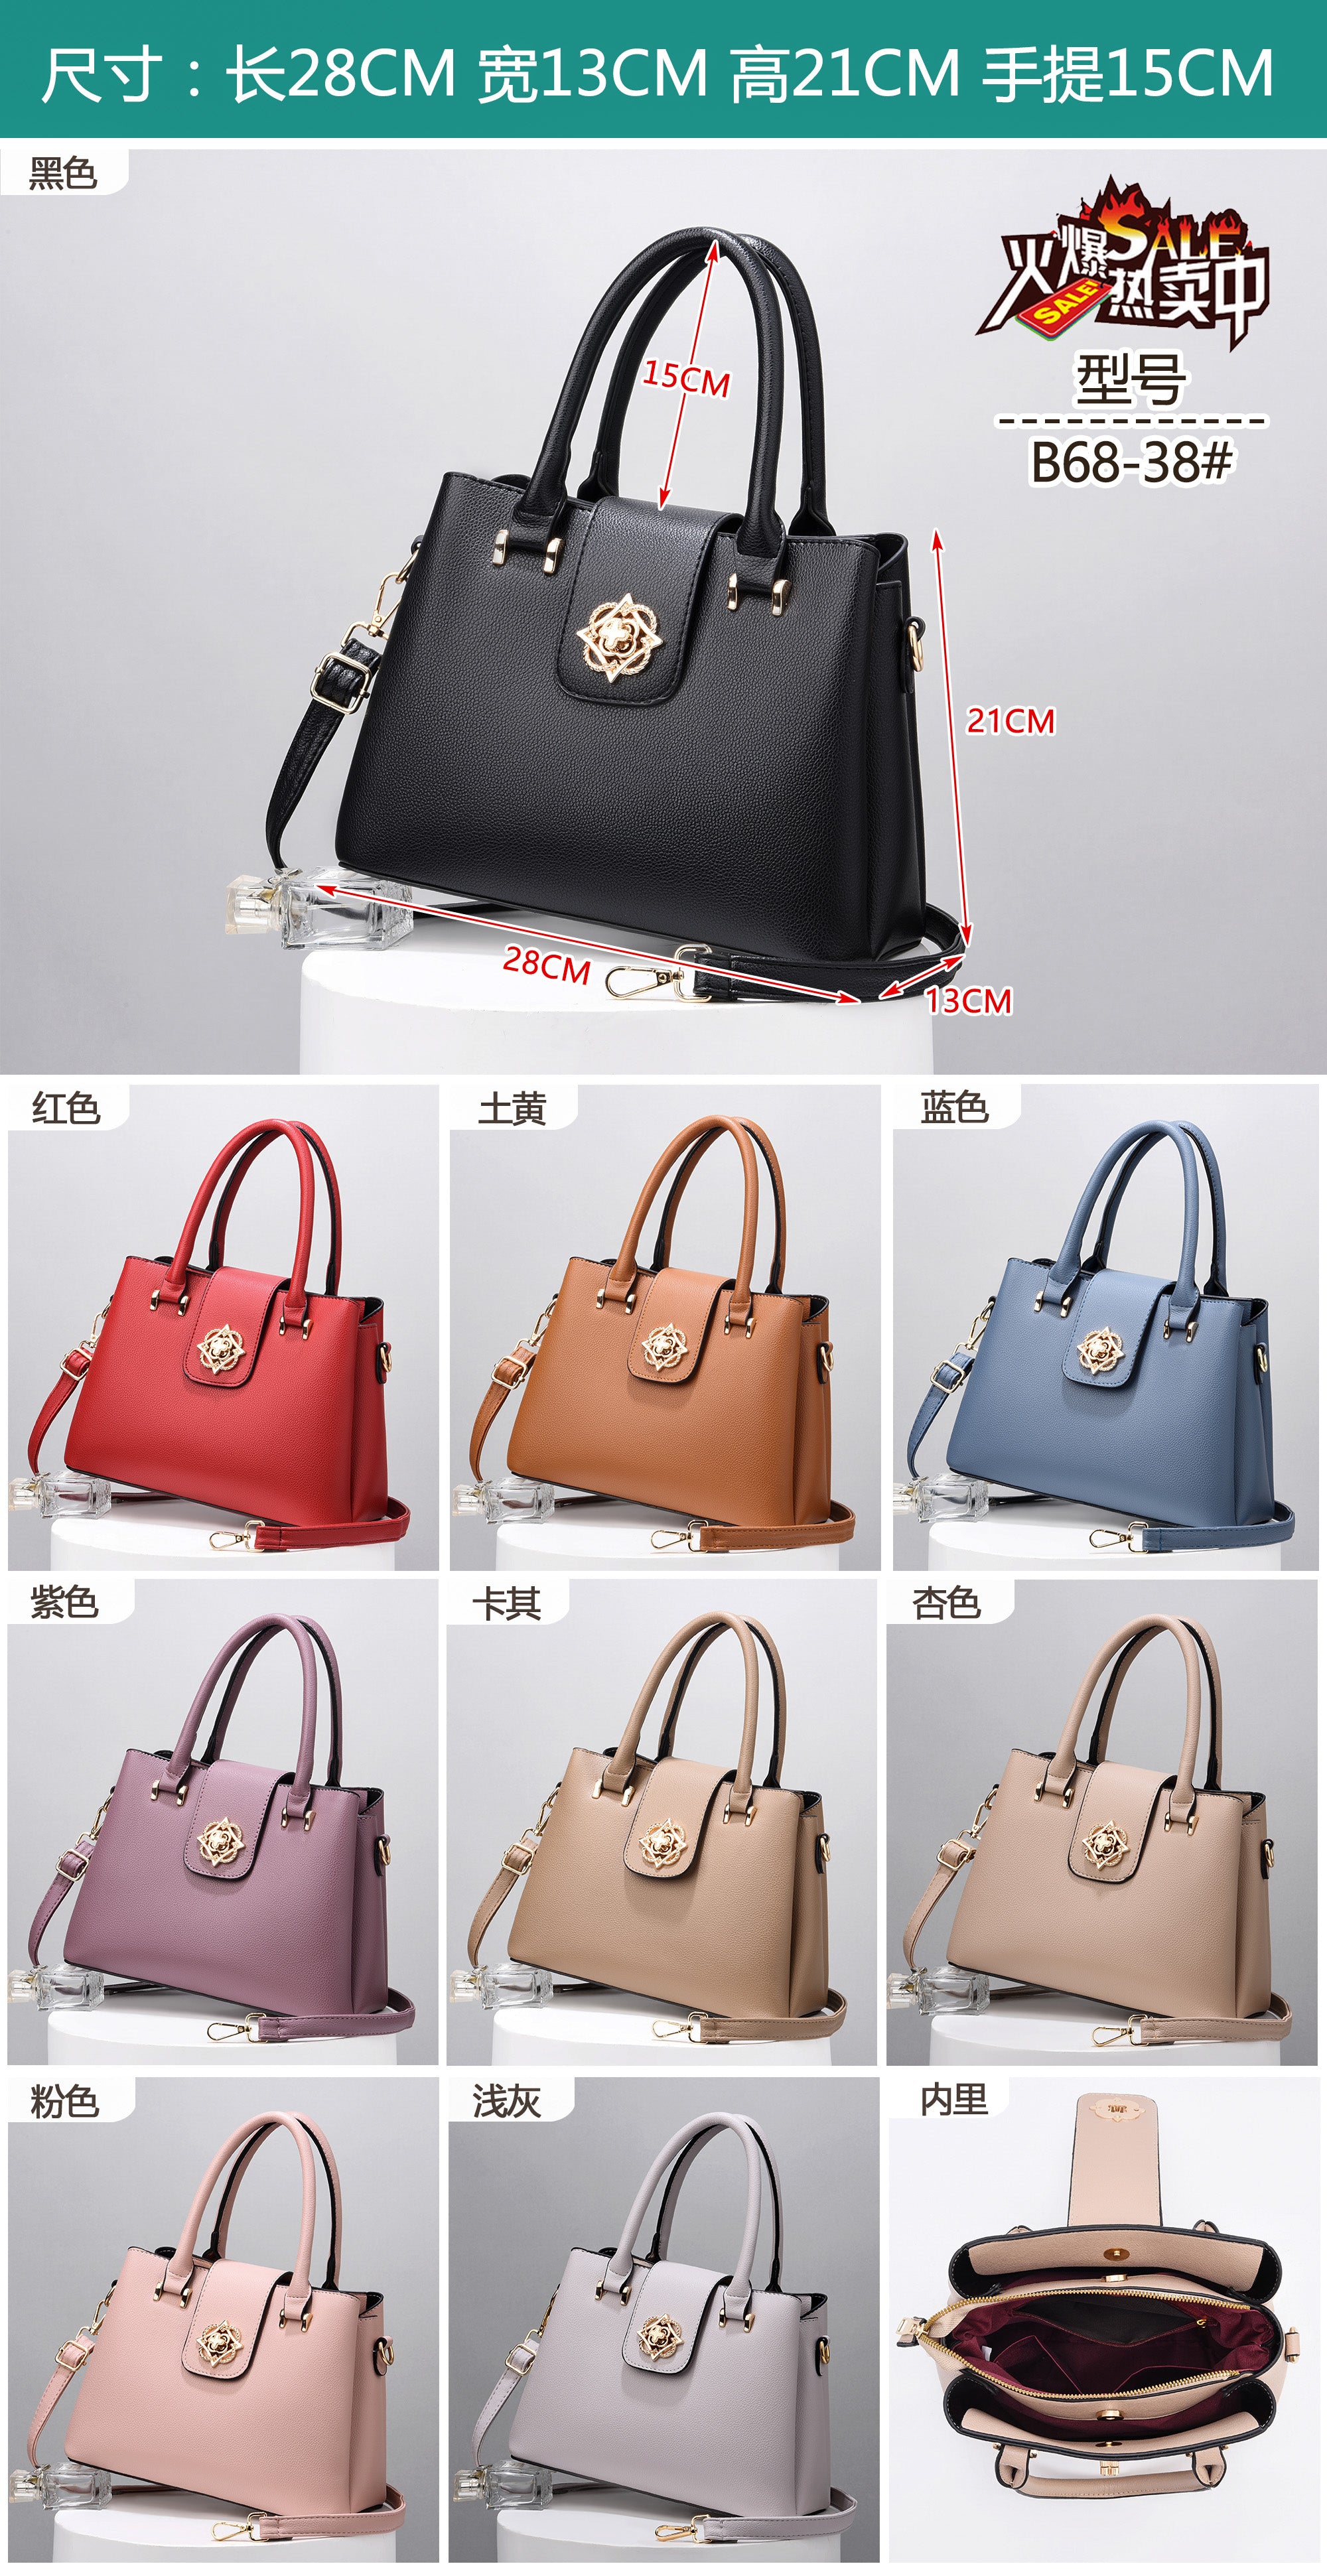 GB Handbag Colors